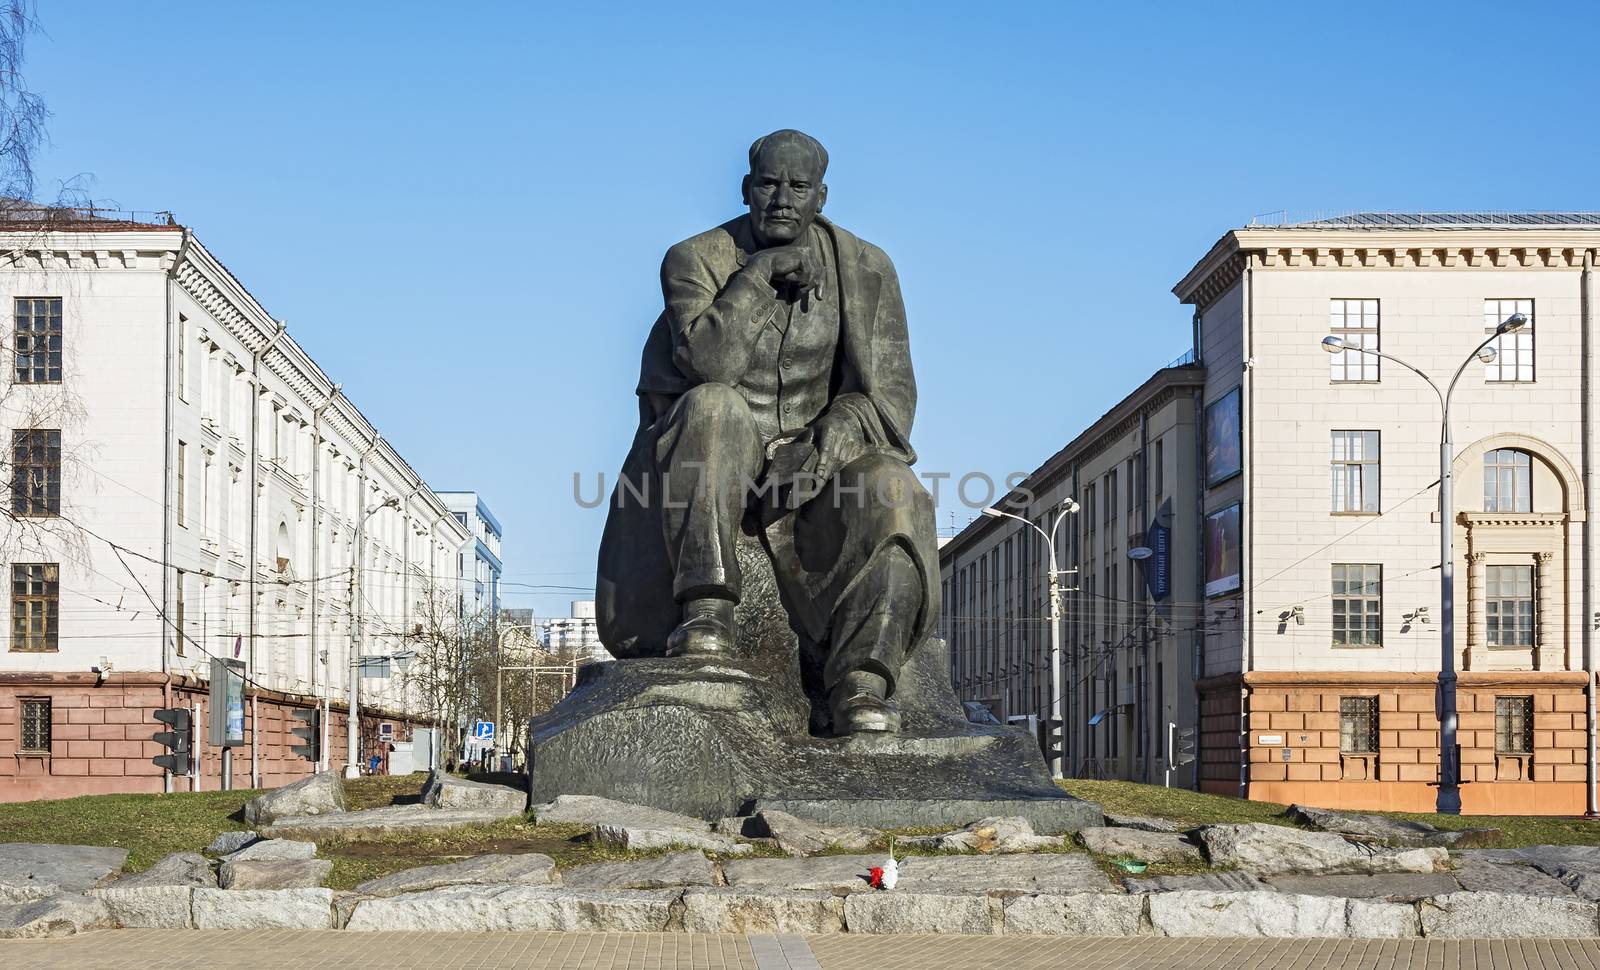 Monument to the Belarusian writer Yakub Kolos in Minsk (Belarus) by Grommik